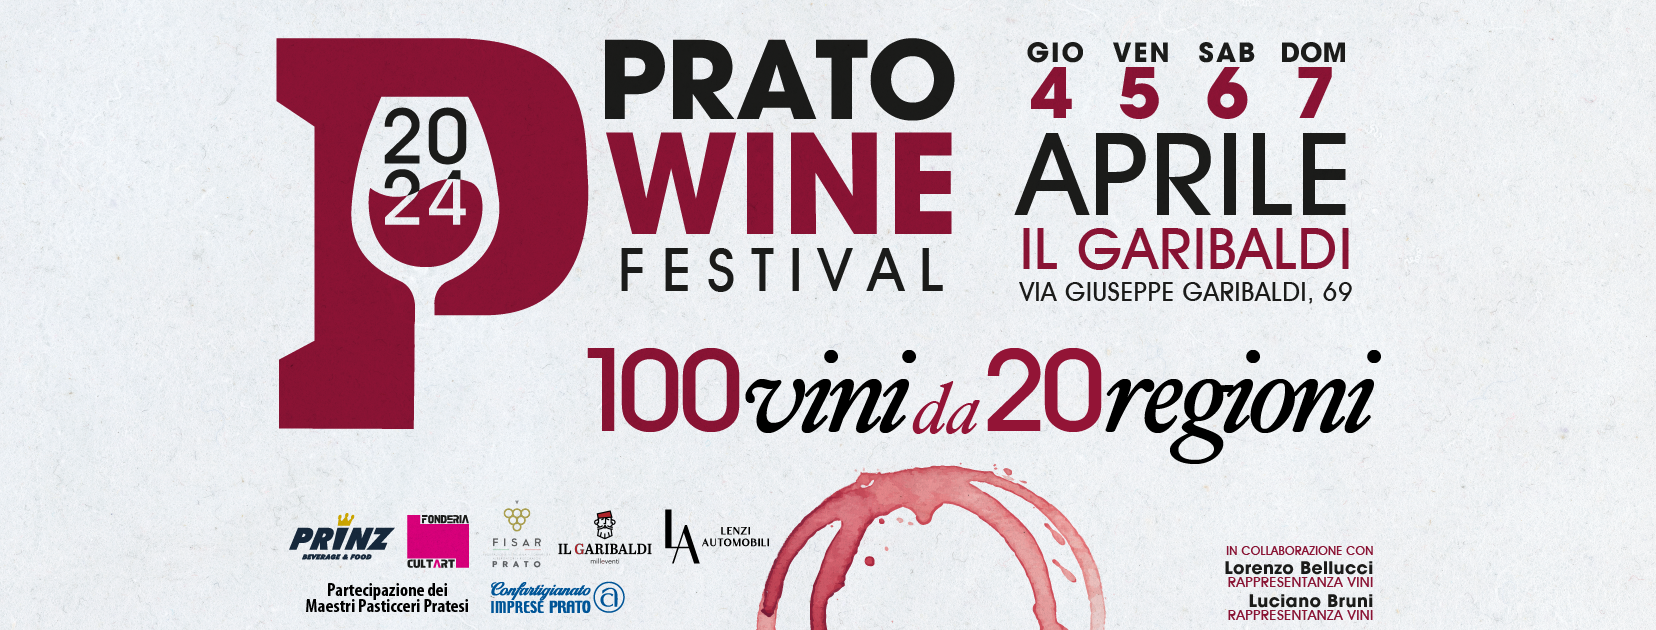 prato_wine